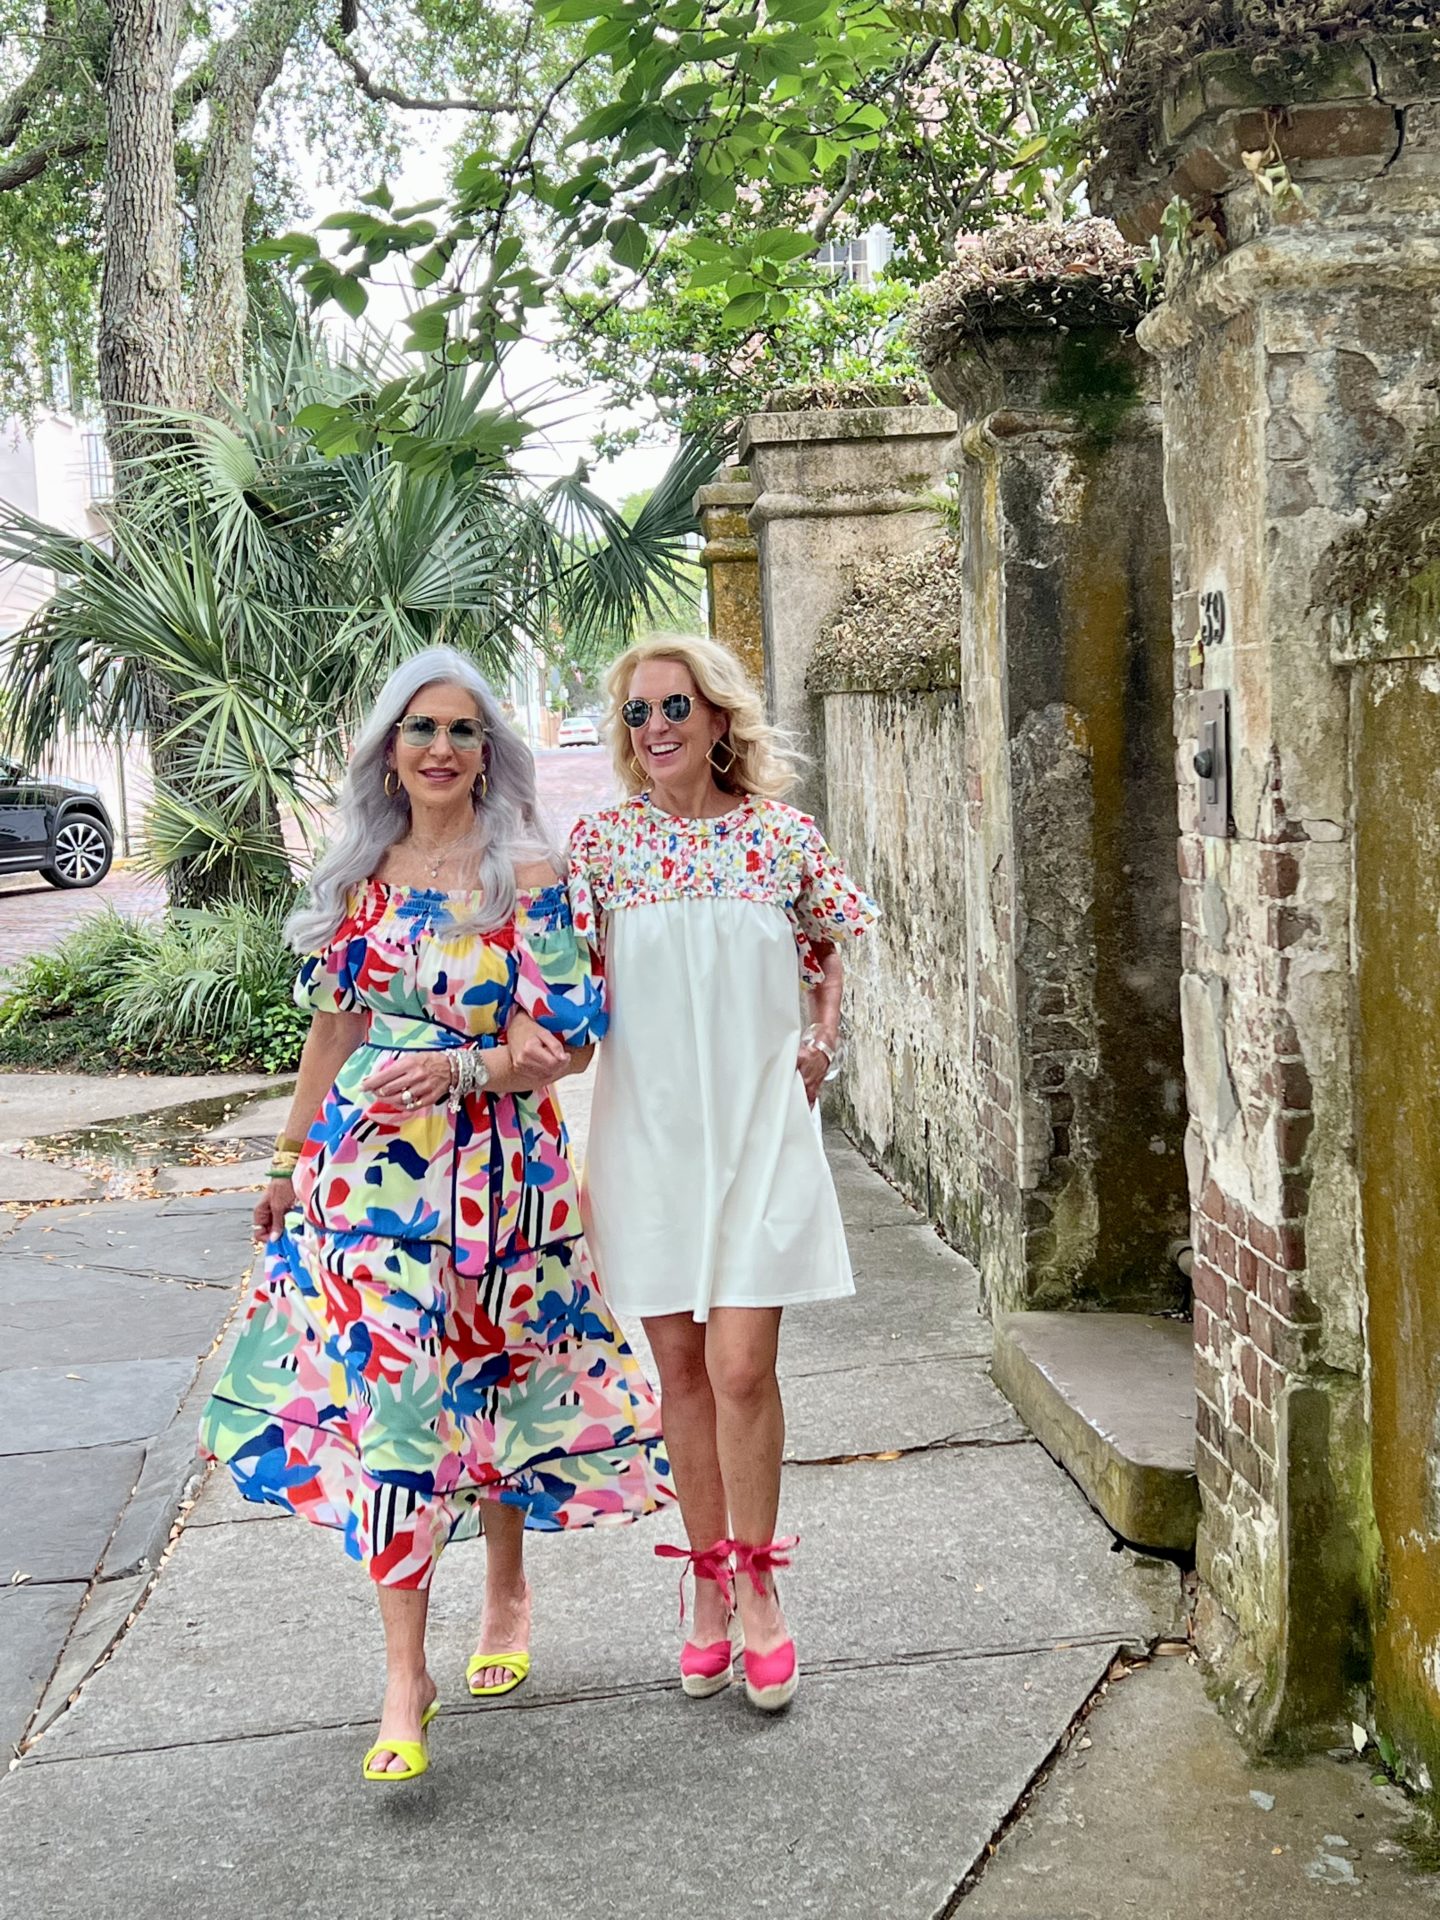 ladies wearing floral dresses walking